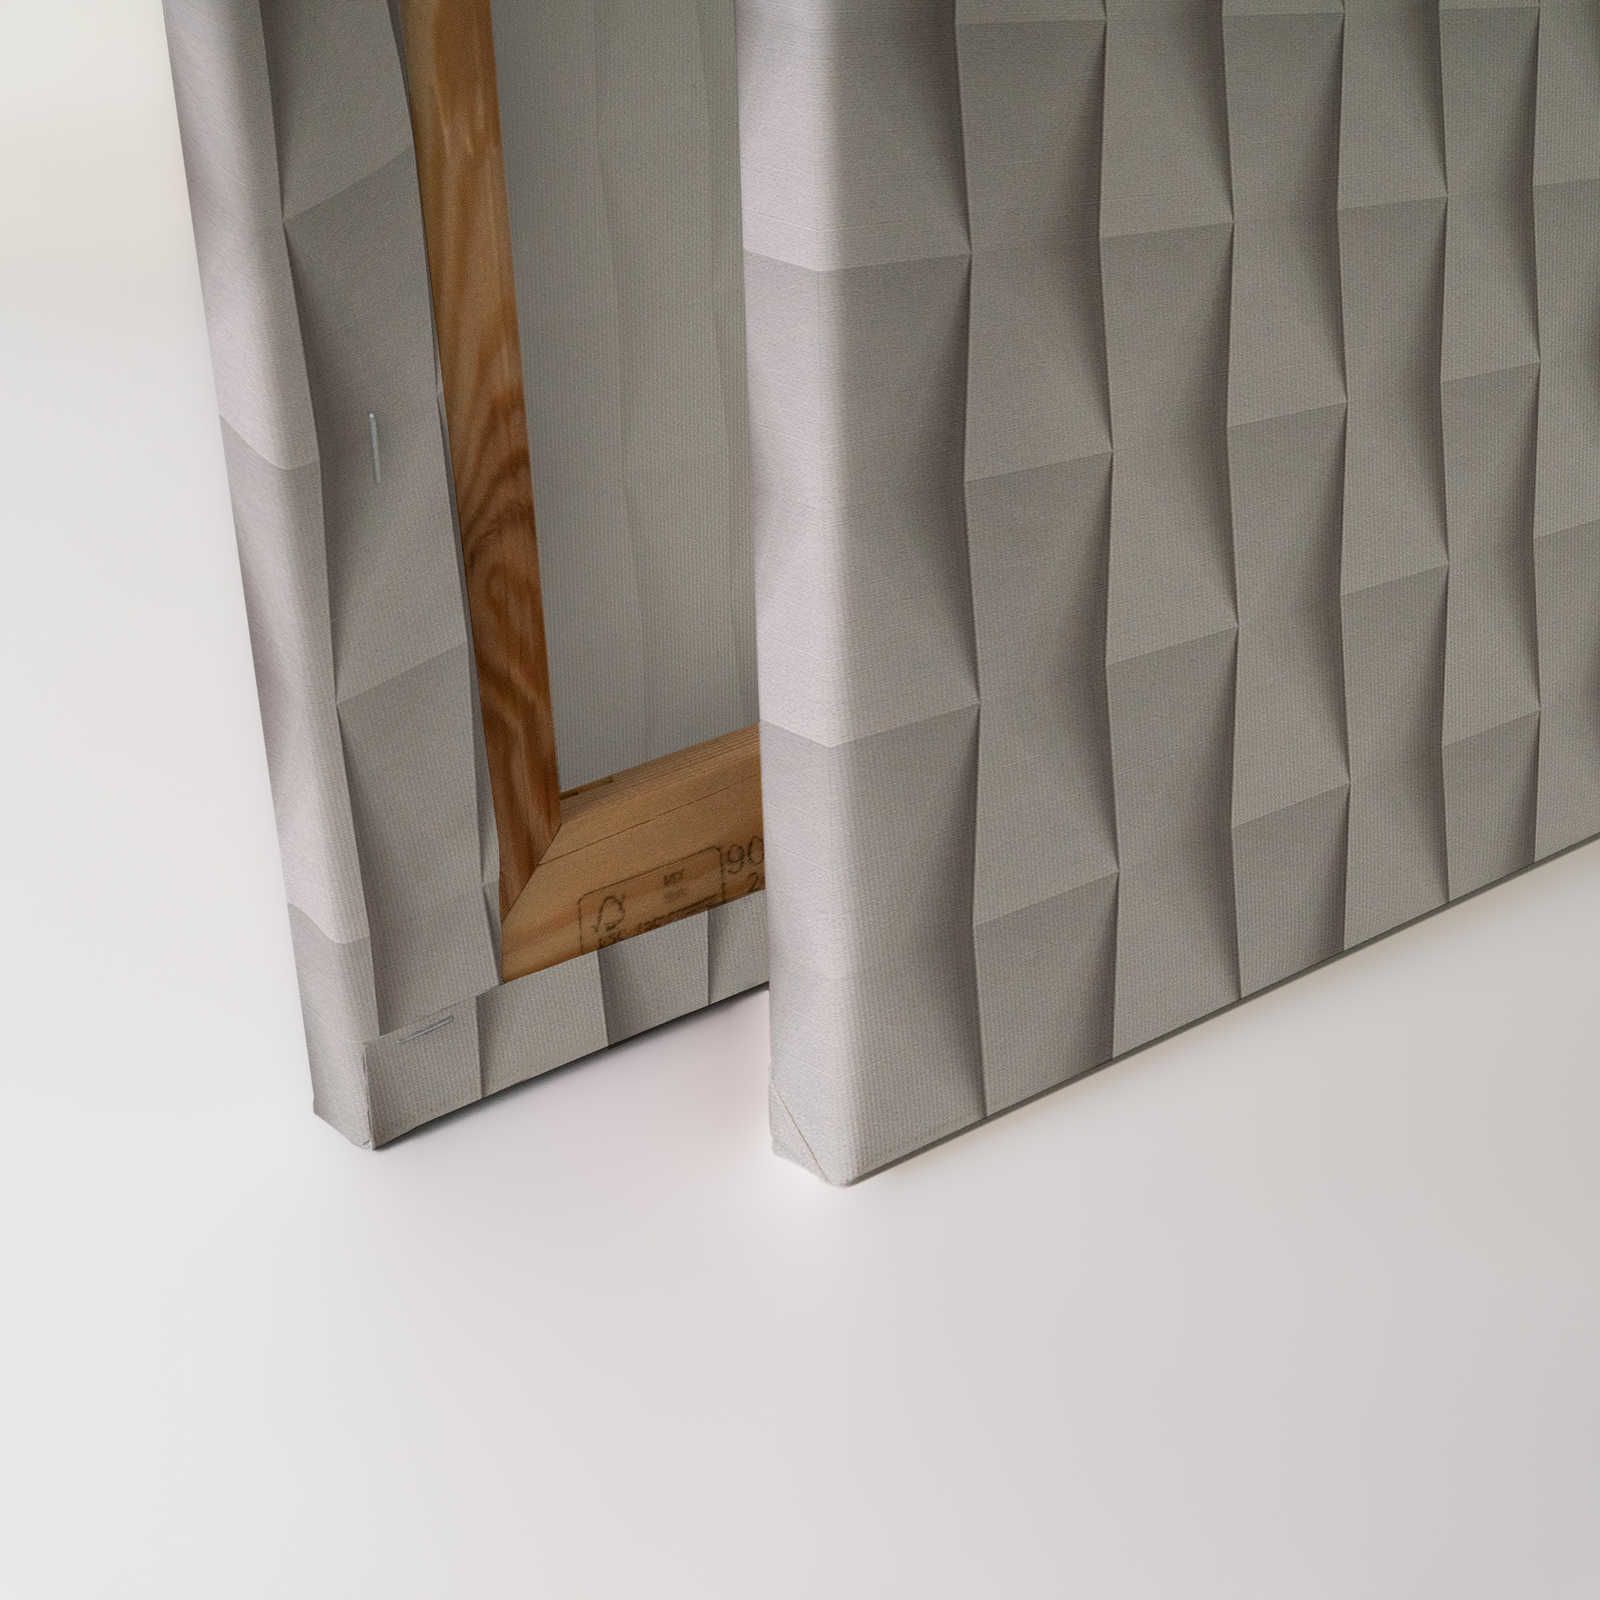             Paper House 2 - 3D toile papier pliage design avec ombre portée - 0,90 m x 0,60 m
        